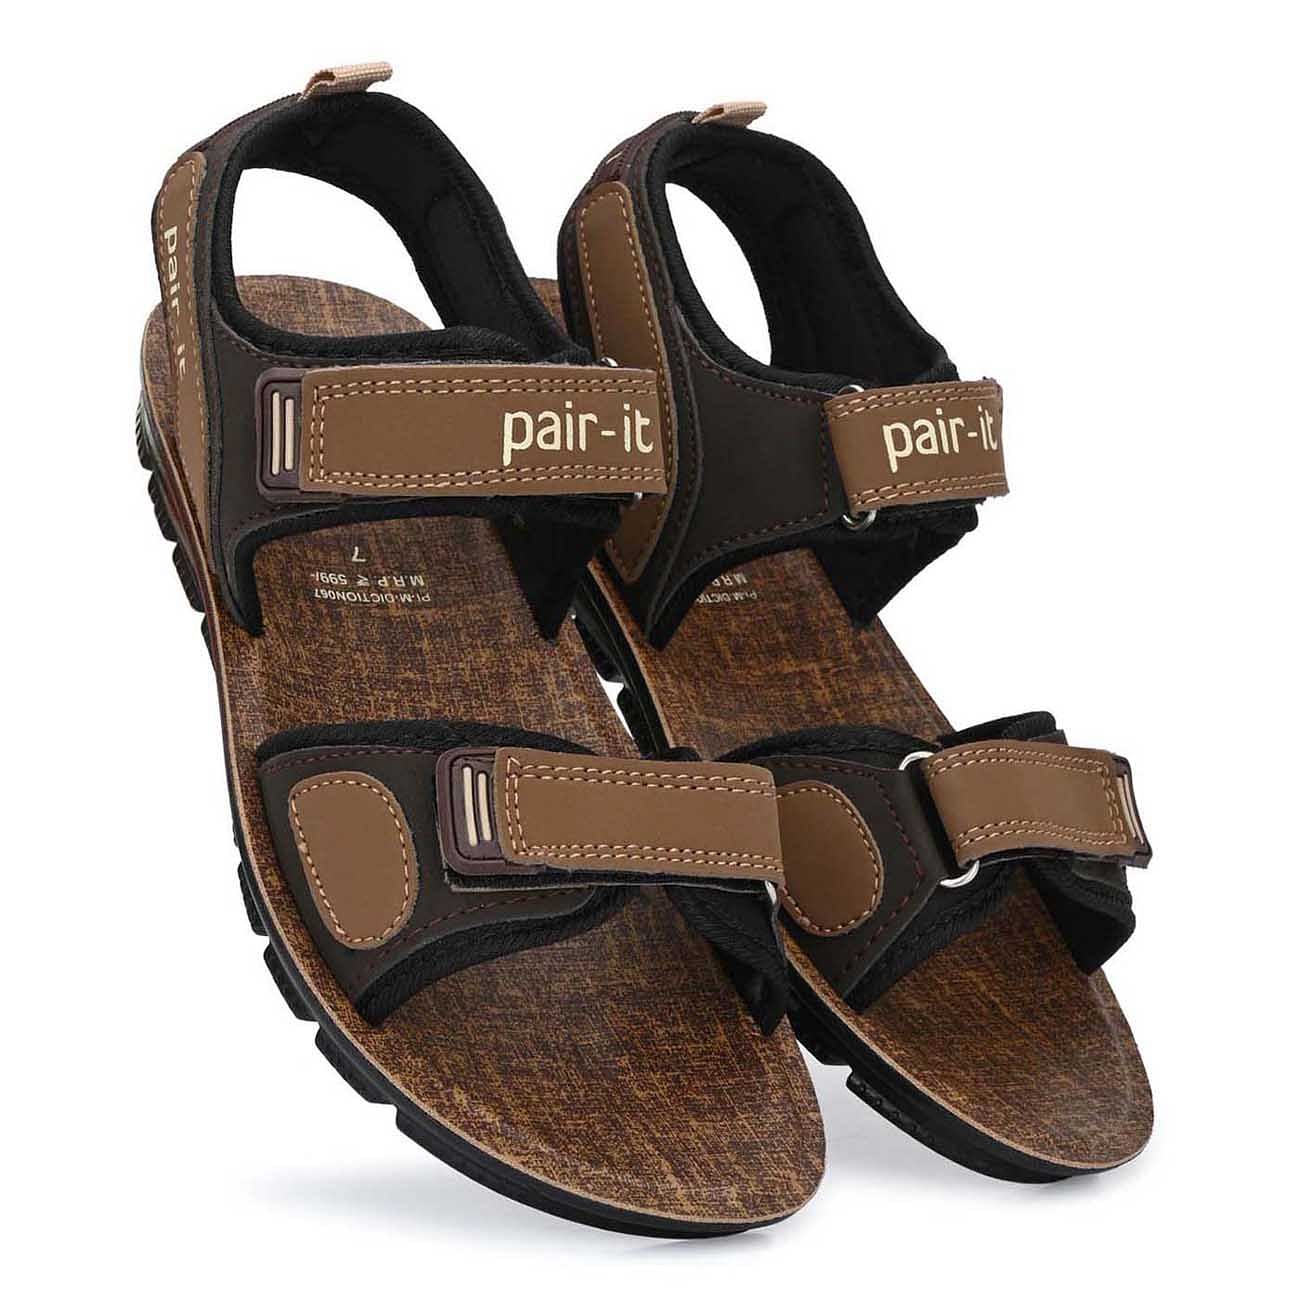 Pair-it Men's PU Sandals -  DICTION067 - Beige